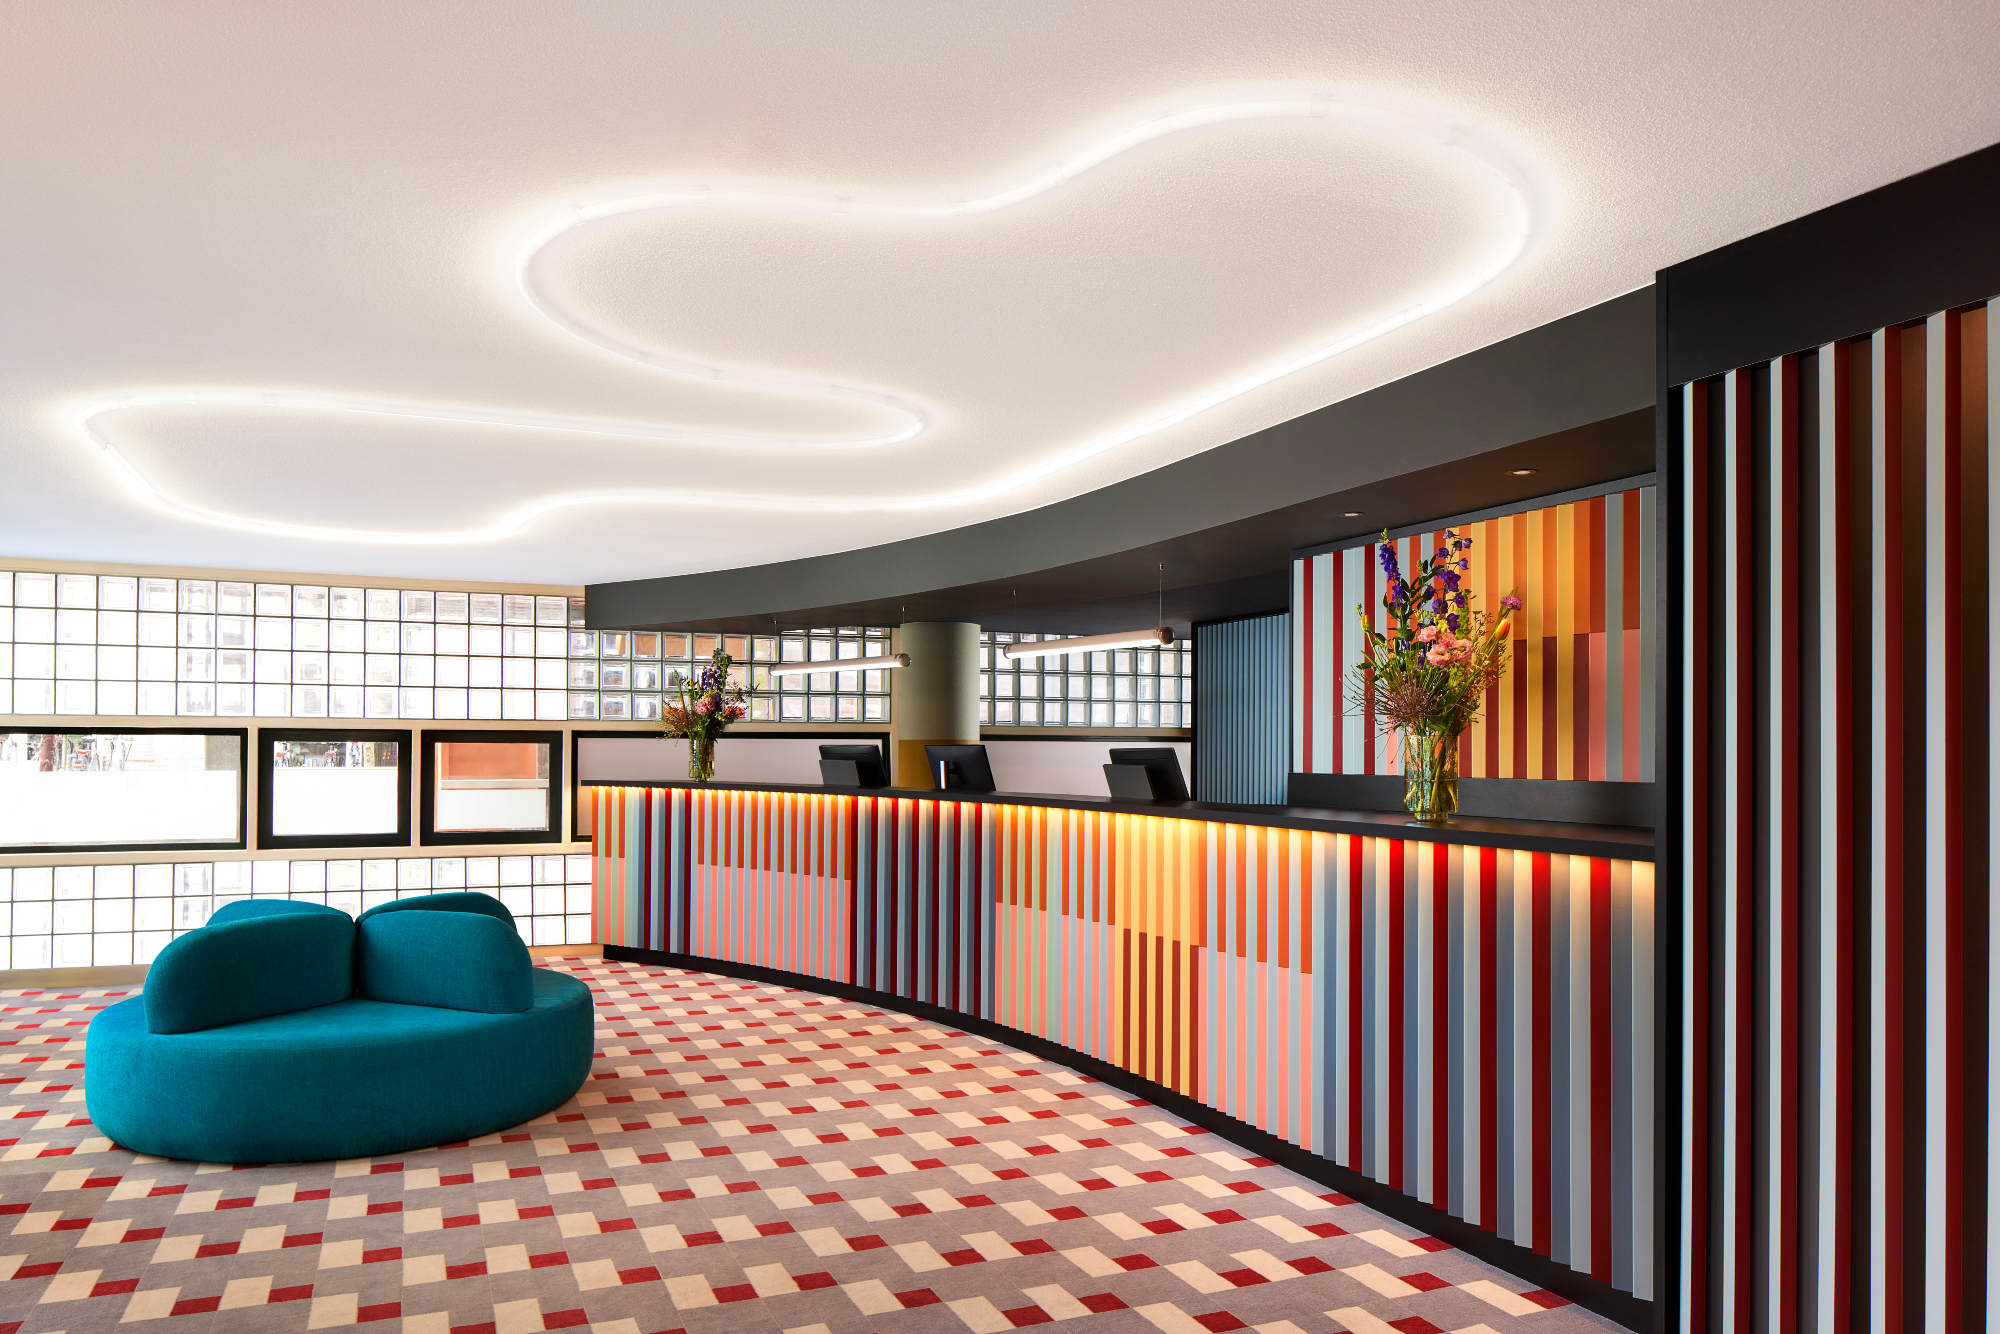 Avani opent eerste hotel in Nederland